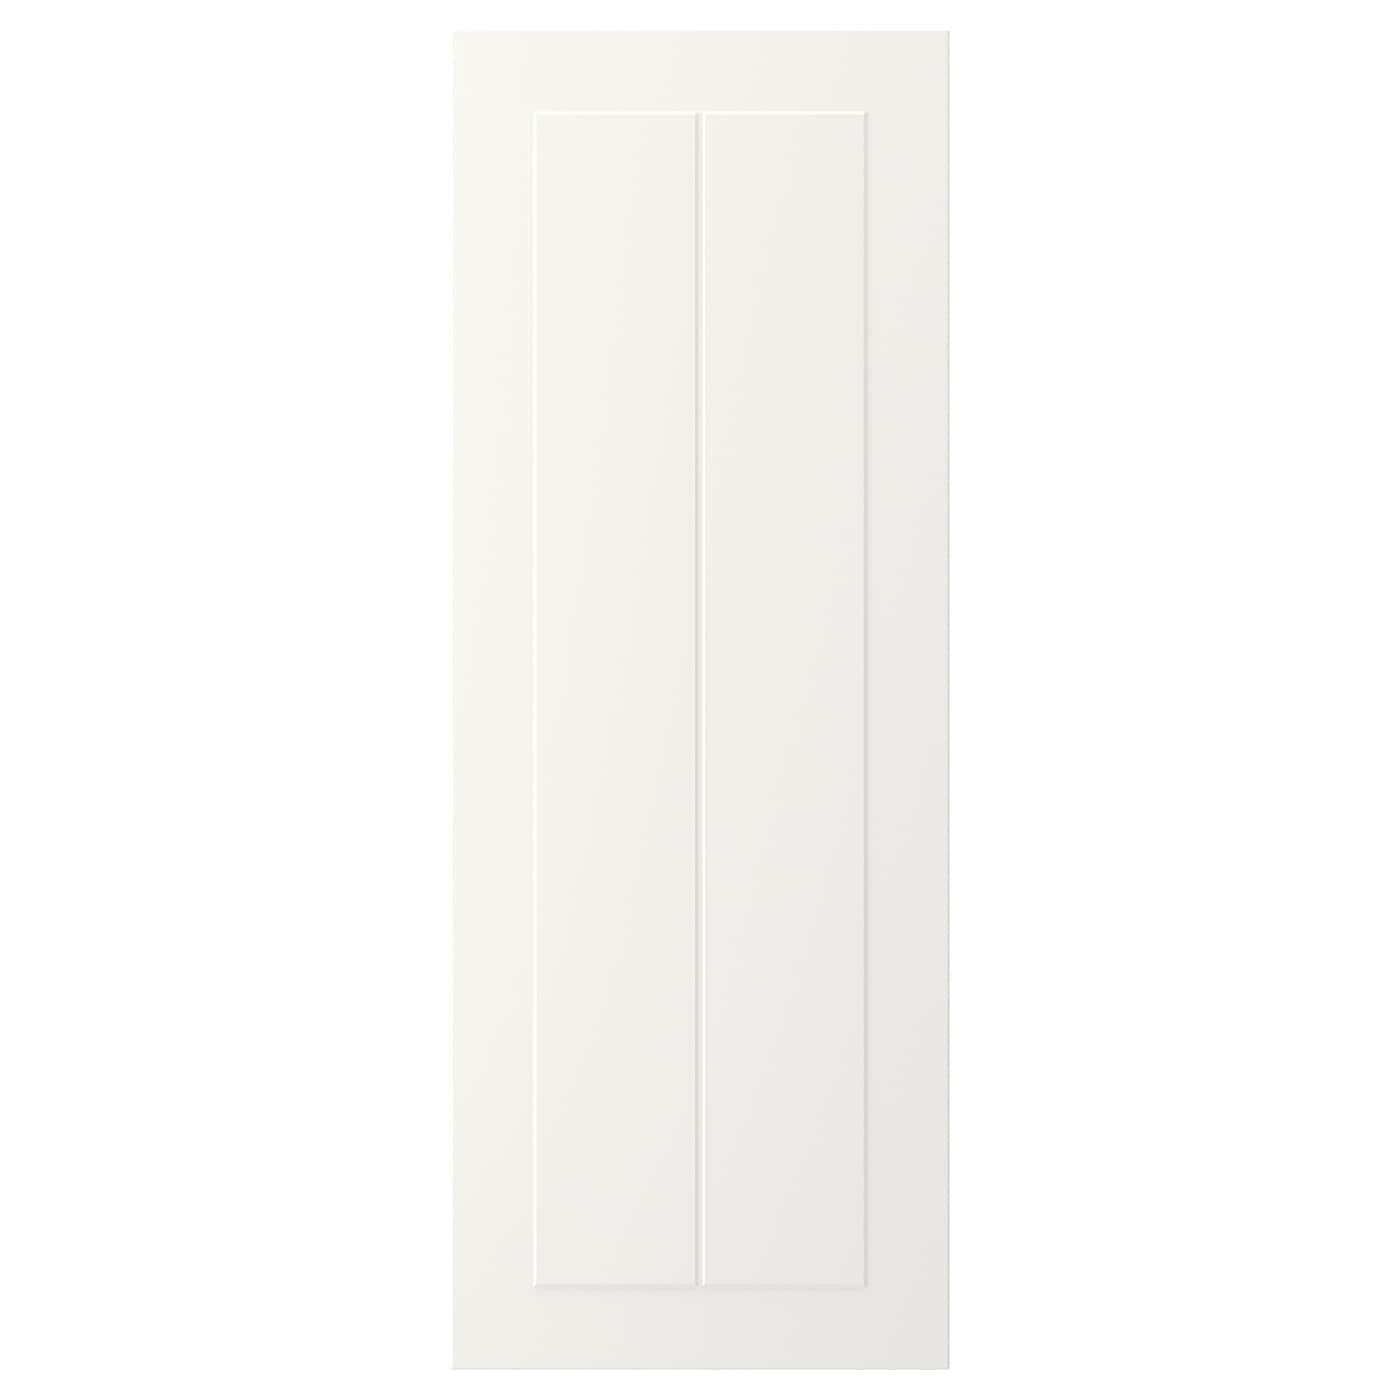 Фасад - IKEA STENSUND, 80х30 см, белый, СТЕНСУНД ИКЕА